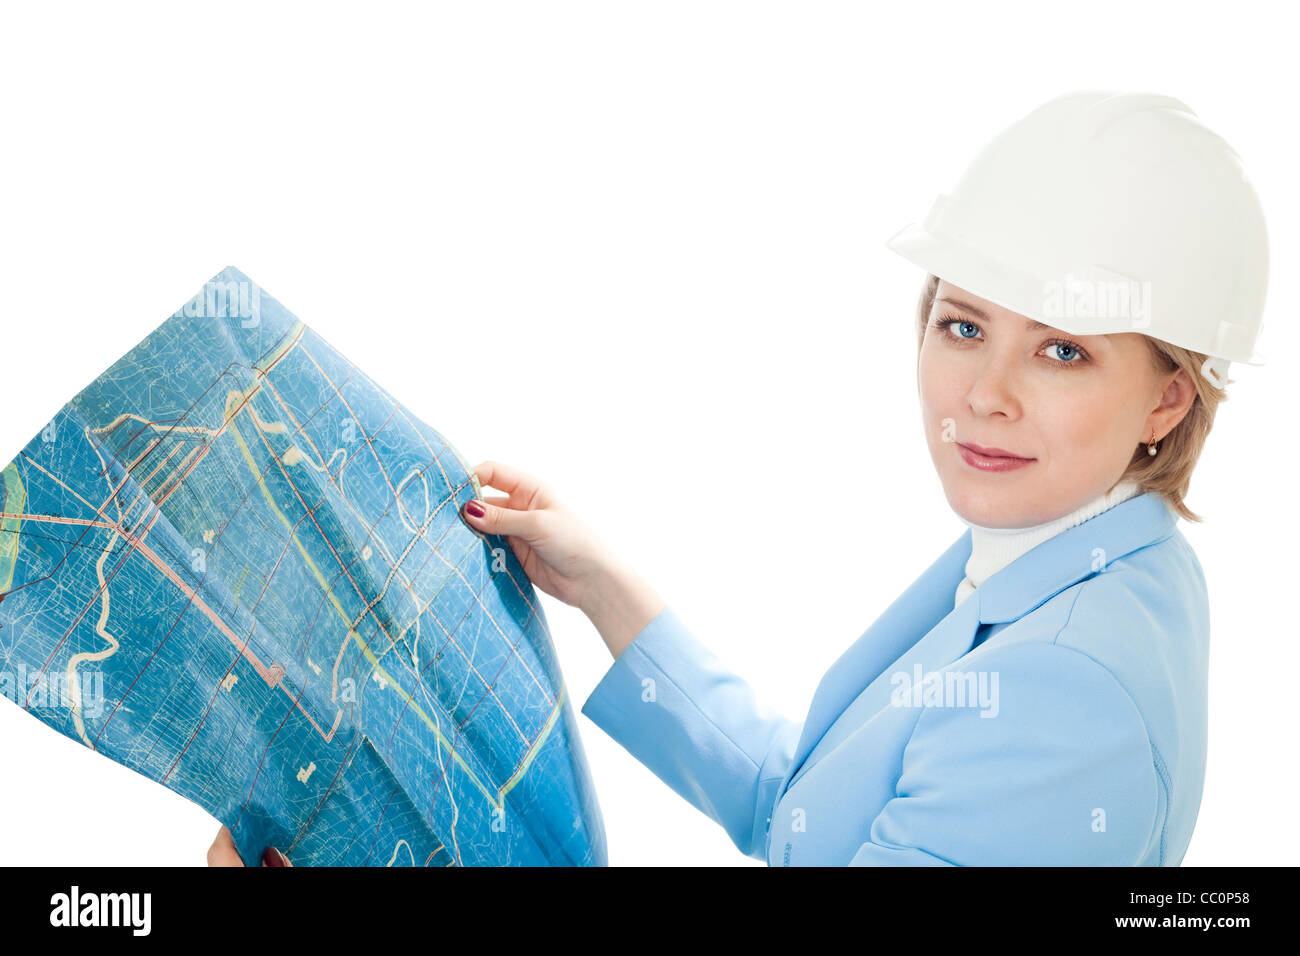 La donna nel coperchio rigido di contenimento del piano di costruzione, isolato su bianco Foto Stock